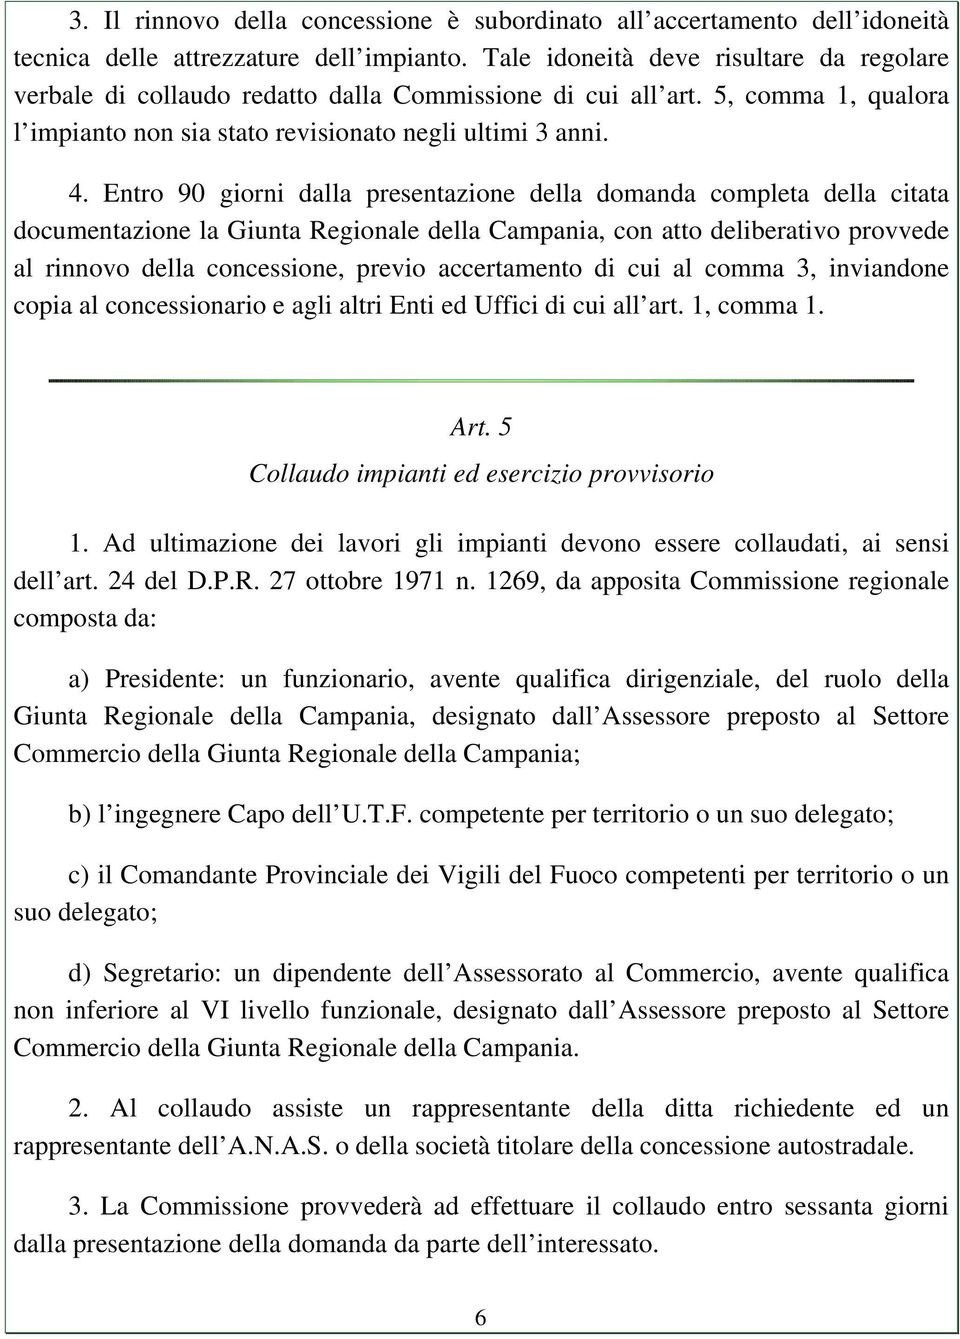 Entro 90 giorni dalla presentazione della domanda completa della citata documentazione la Giunta Regionale della Campania, con atto deliberativo provvede al rinnovo della concessione, previo